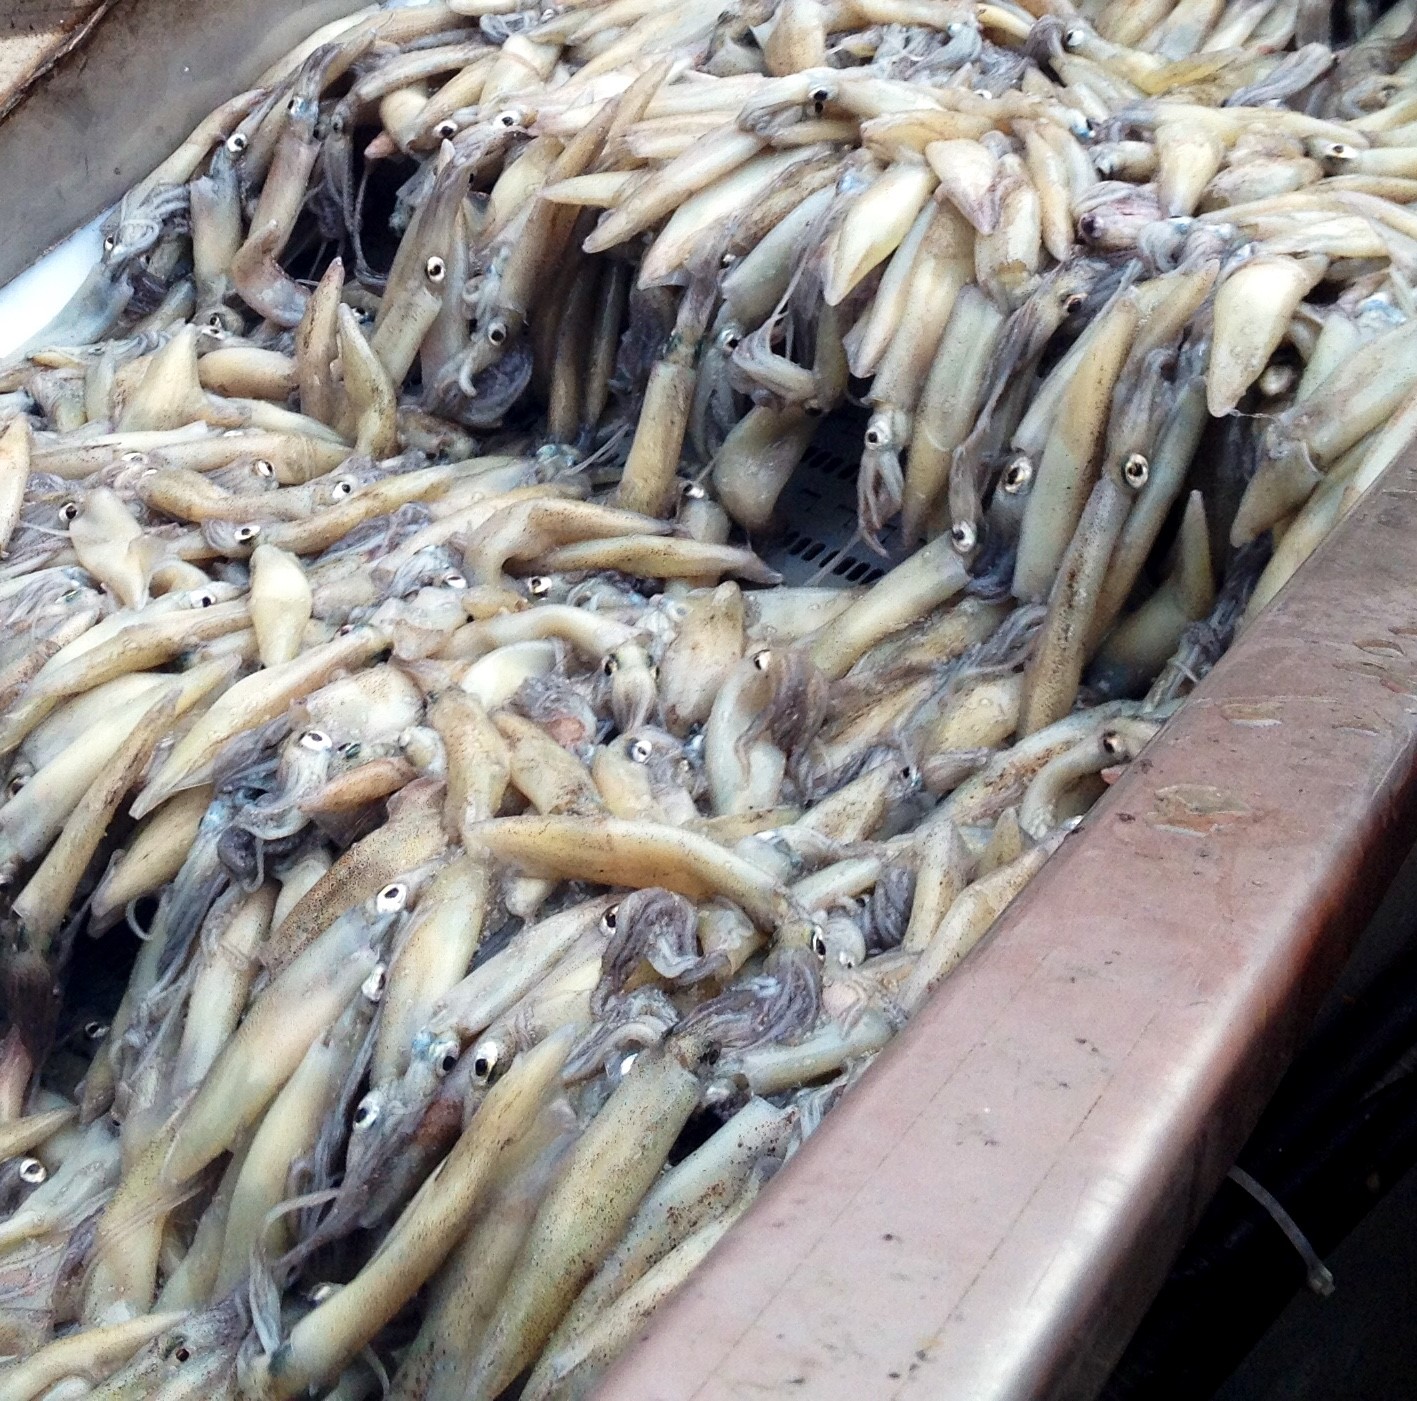 market squid on conveyor belt